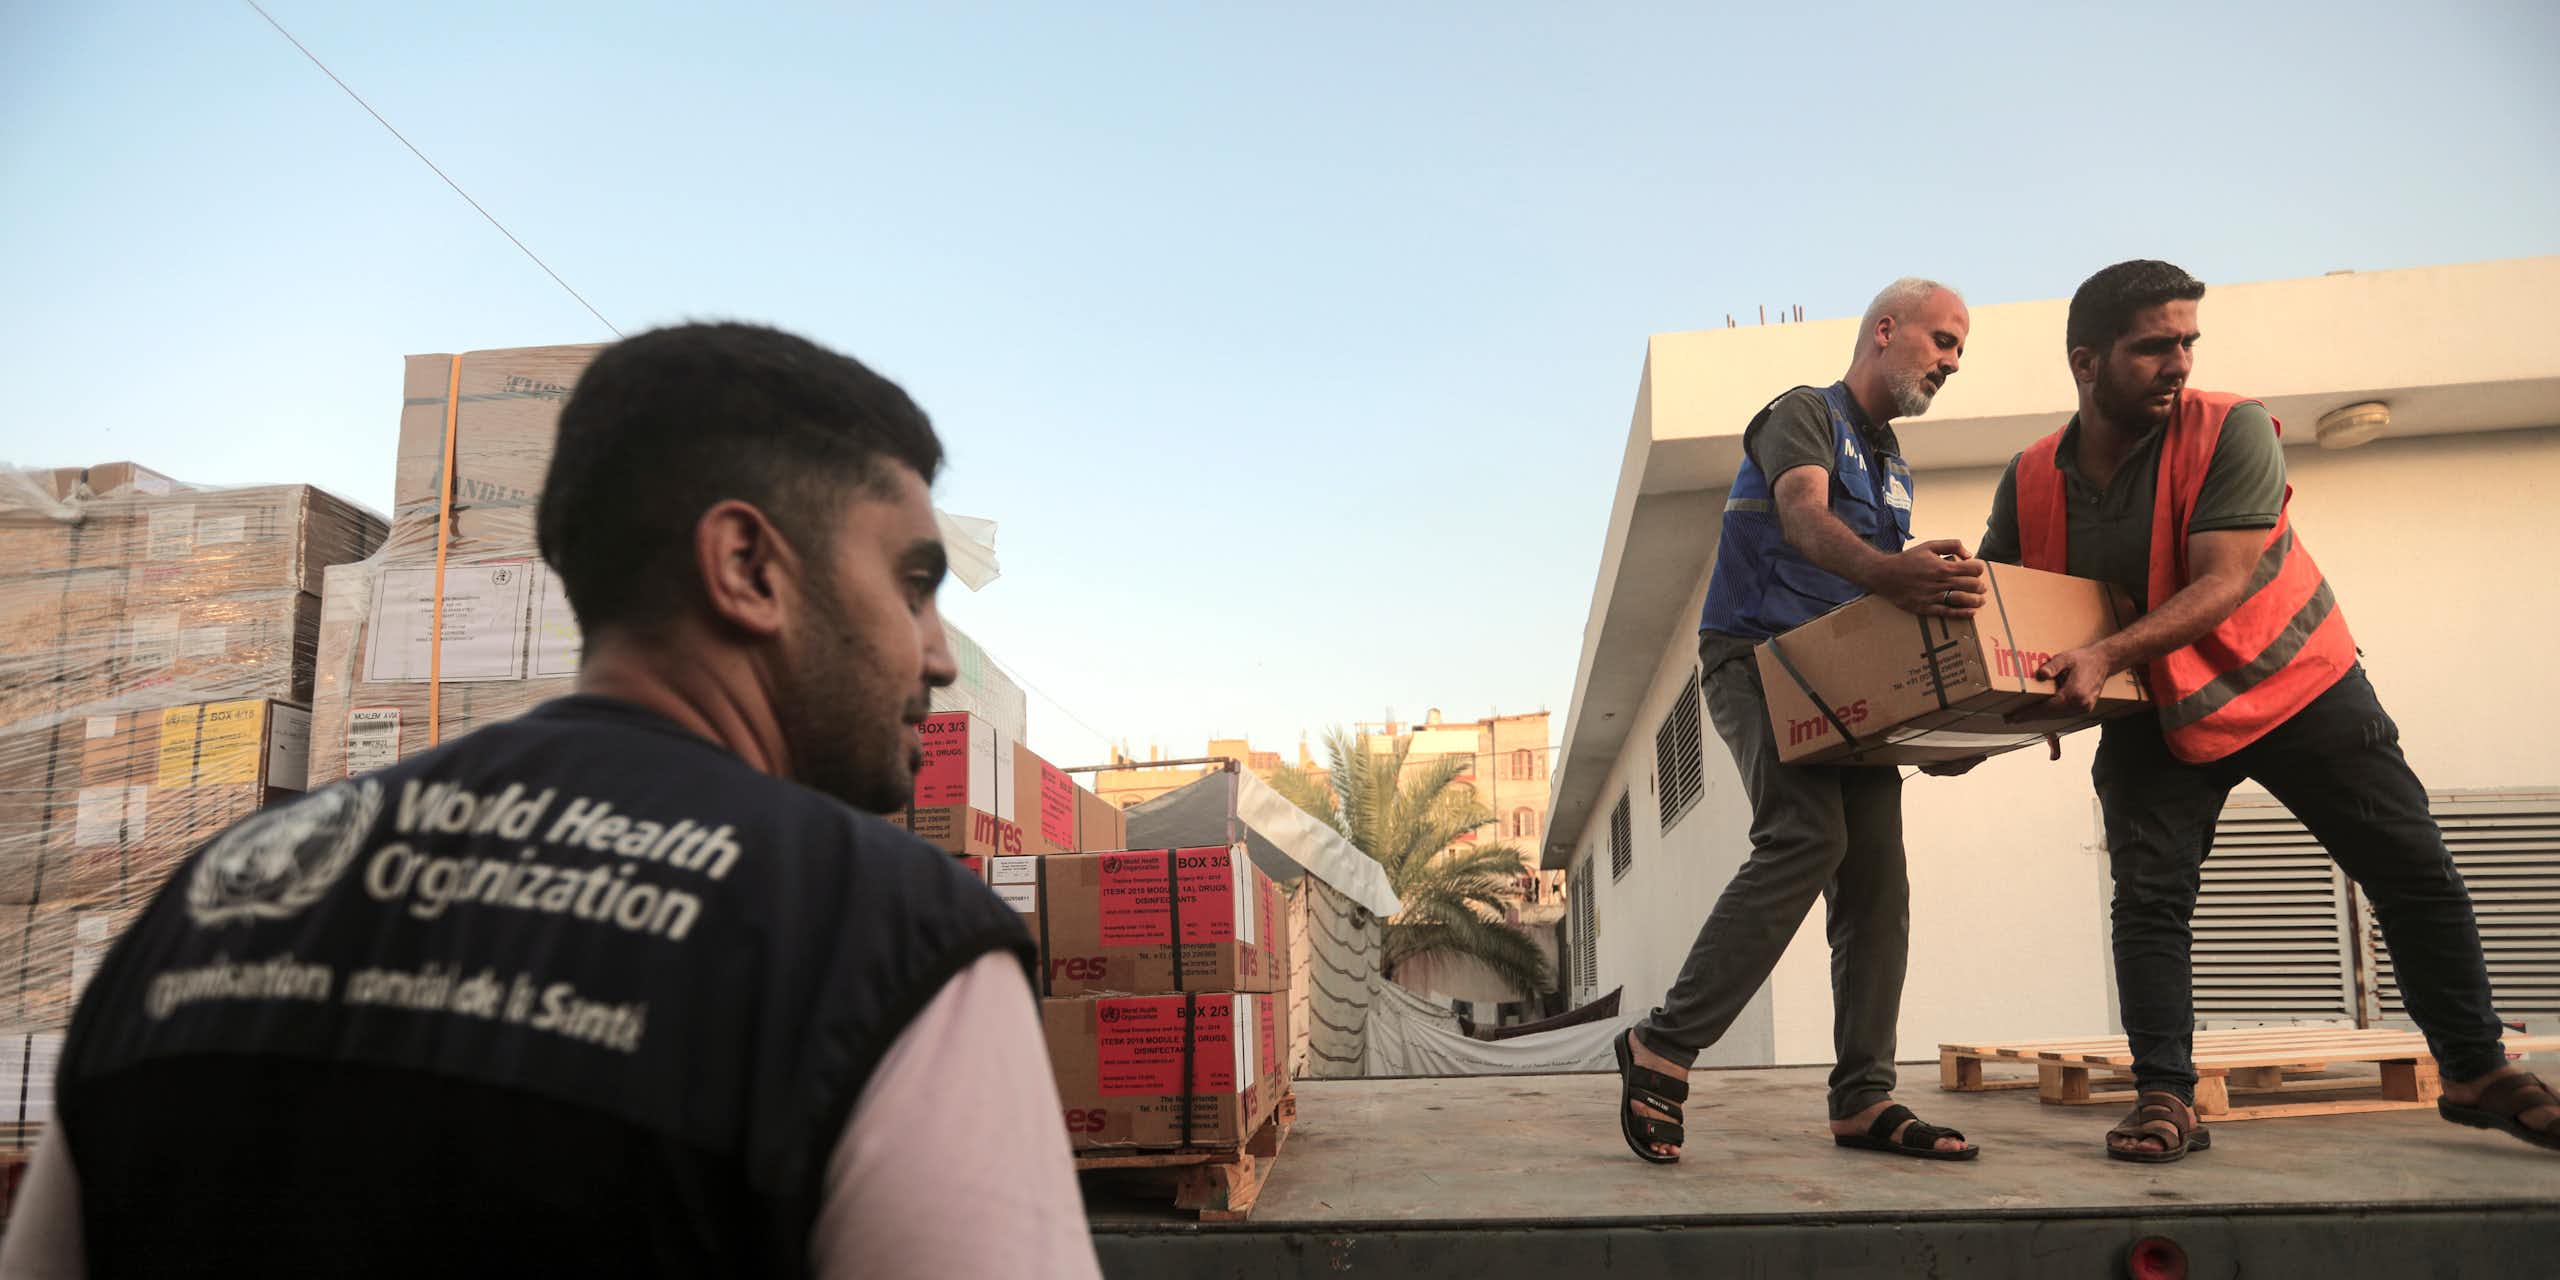 Deux hommes transportent des cartons depuis un camion, tandis qu'un troisième se tient sur le côté. Il porte un gilet de l'Organisation mondiale de la santé.